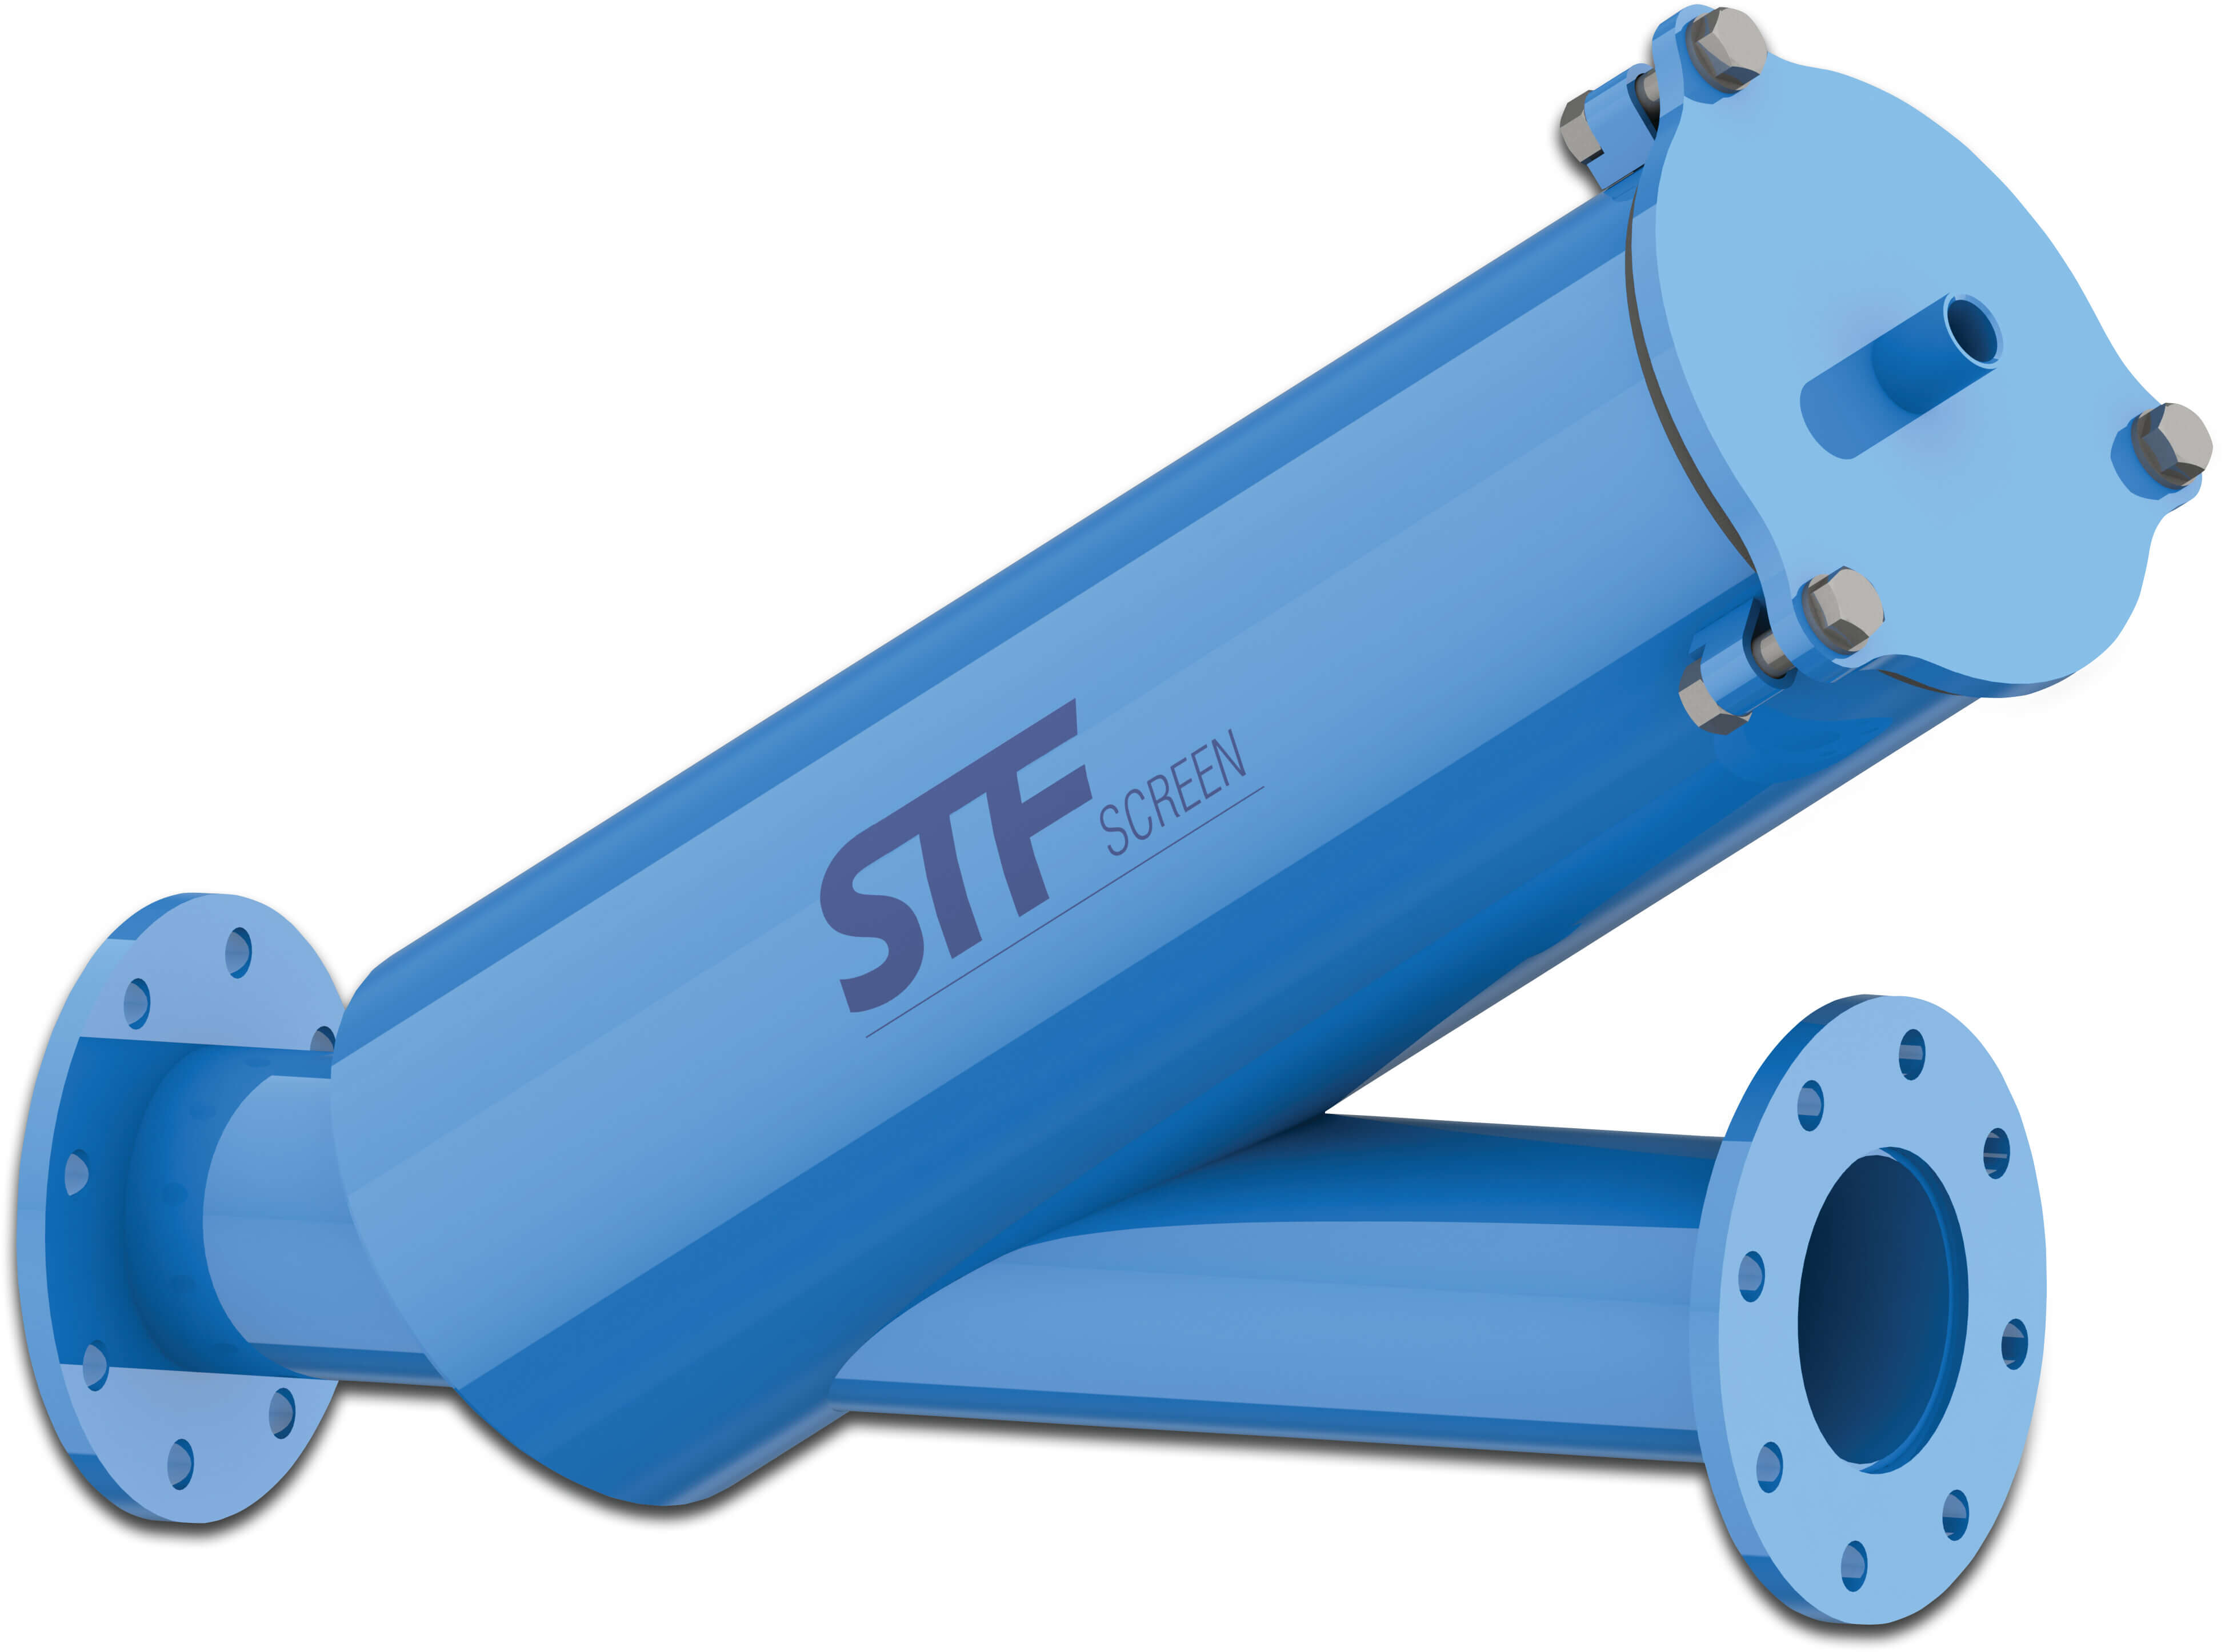 STF In-line filter carbon steel ST37.2 epoxy belægning DN80 flange 8bar 120mikron rustfri stål maske blå type FY-3